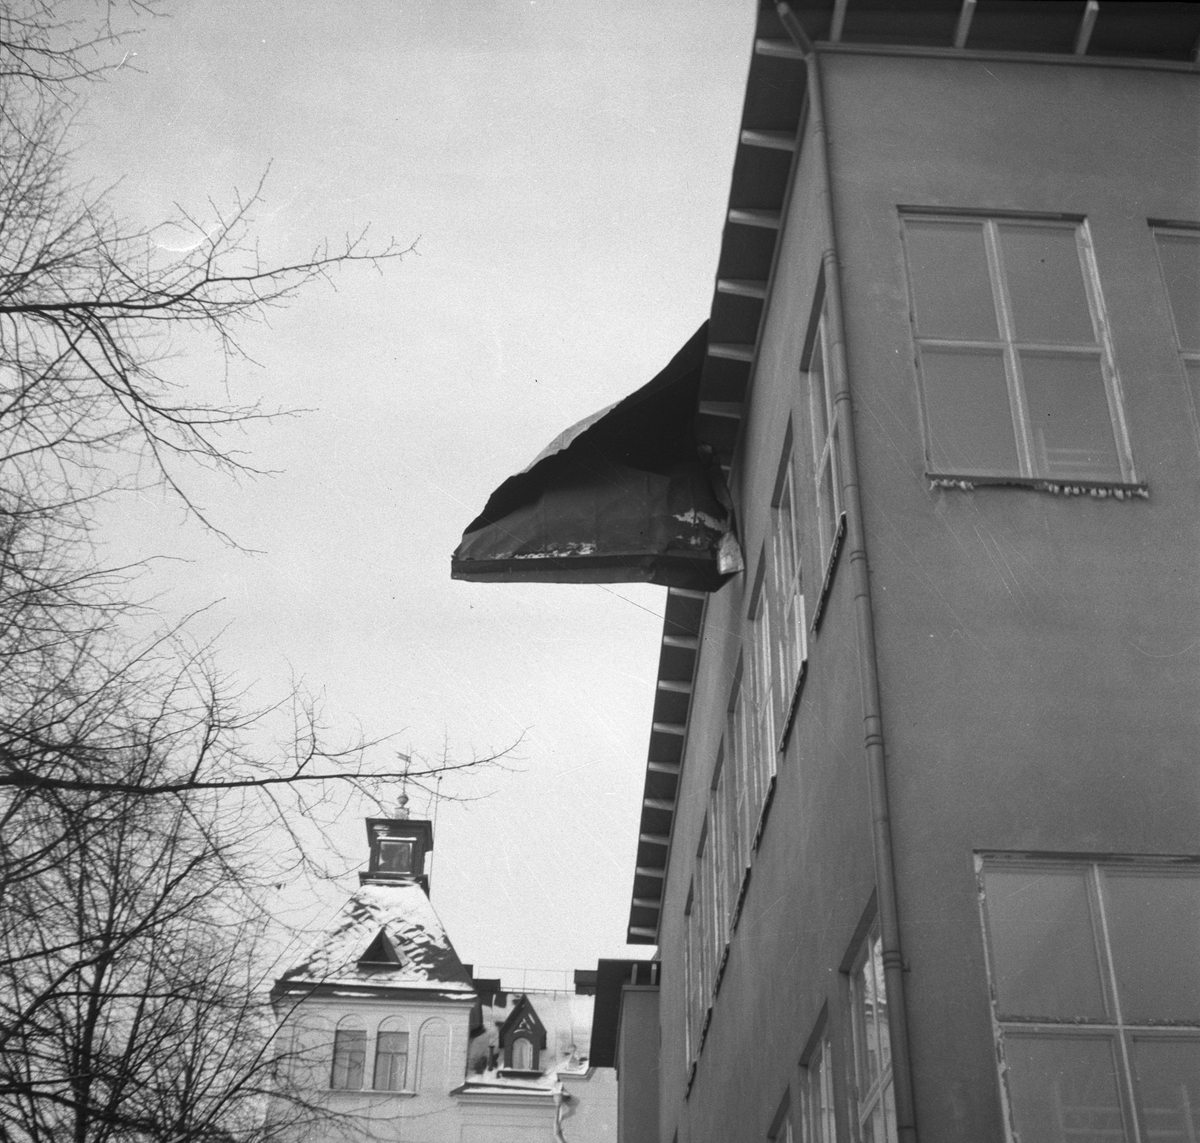 Storm över Gävle. 8 januari 1954.
Norra gymnastikhuset vid Norra skolan. Huset i bakgrunden ligger på Hantverkargatan.